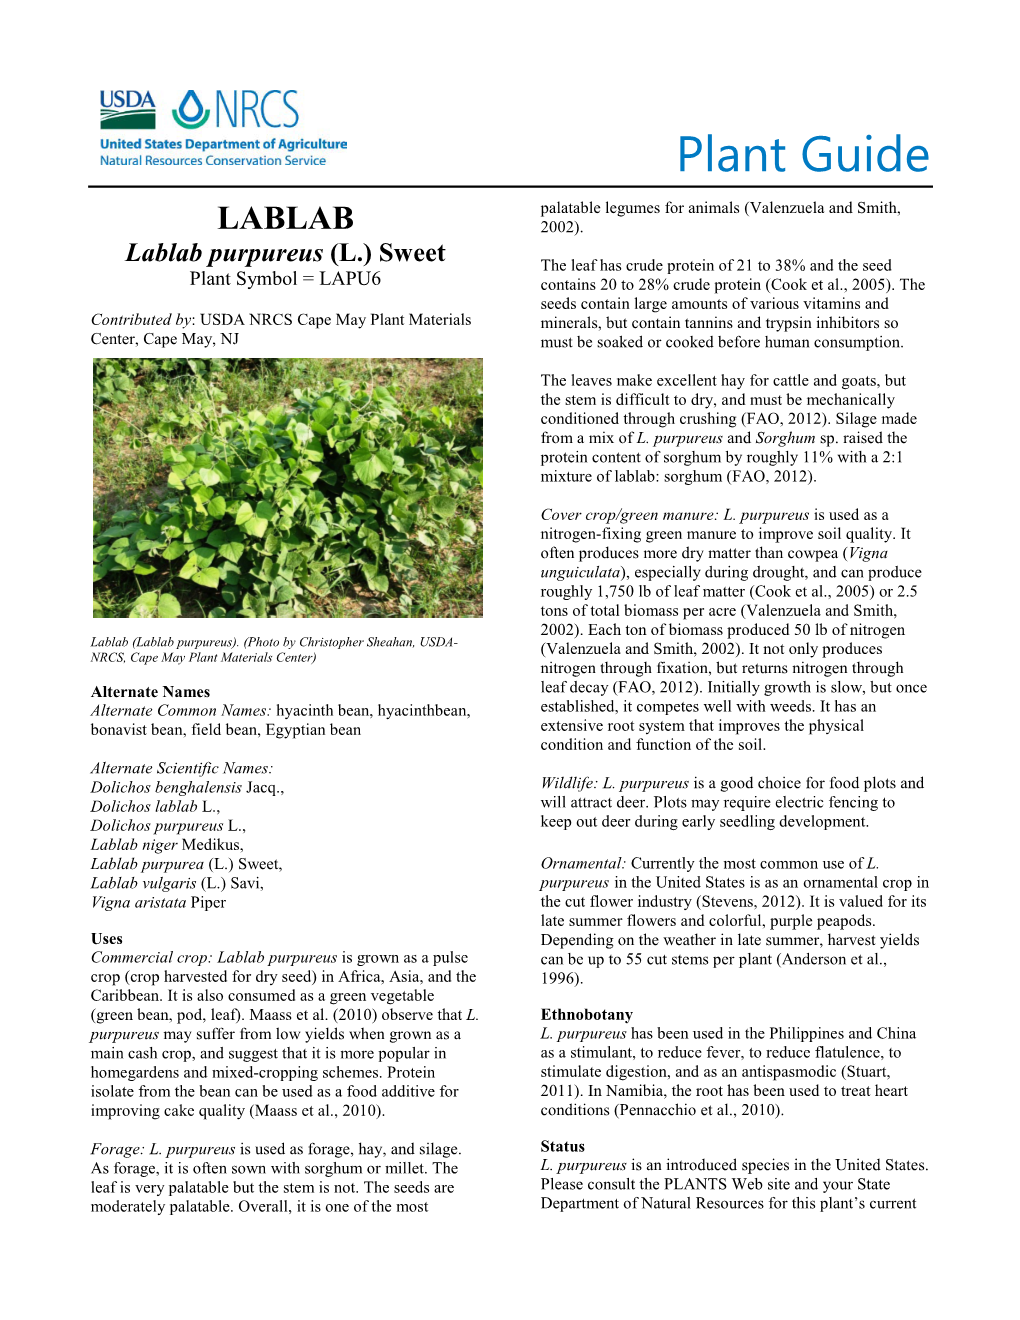 (Lablab Purpureus) Plant Guide